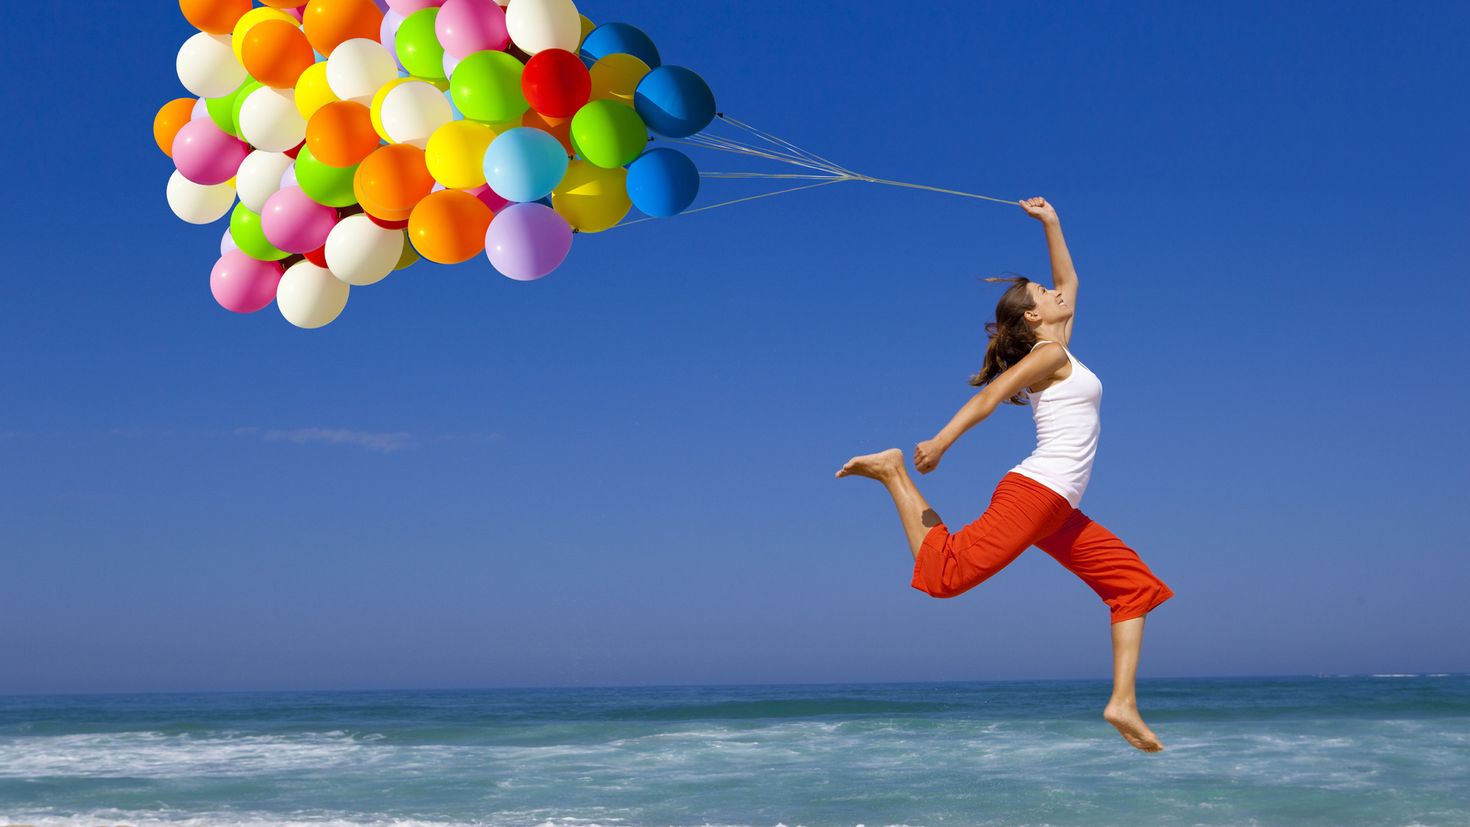 Танец с воздушными шарами. Позитивные фото. Марафон красоты и здоровья. Очень позитивные картинки. Человек с воздушным шариком.